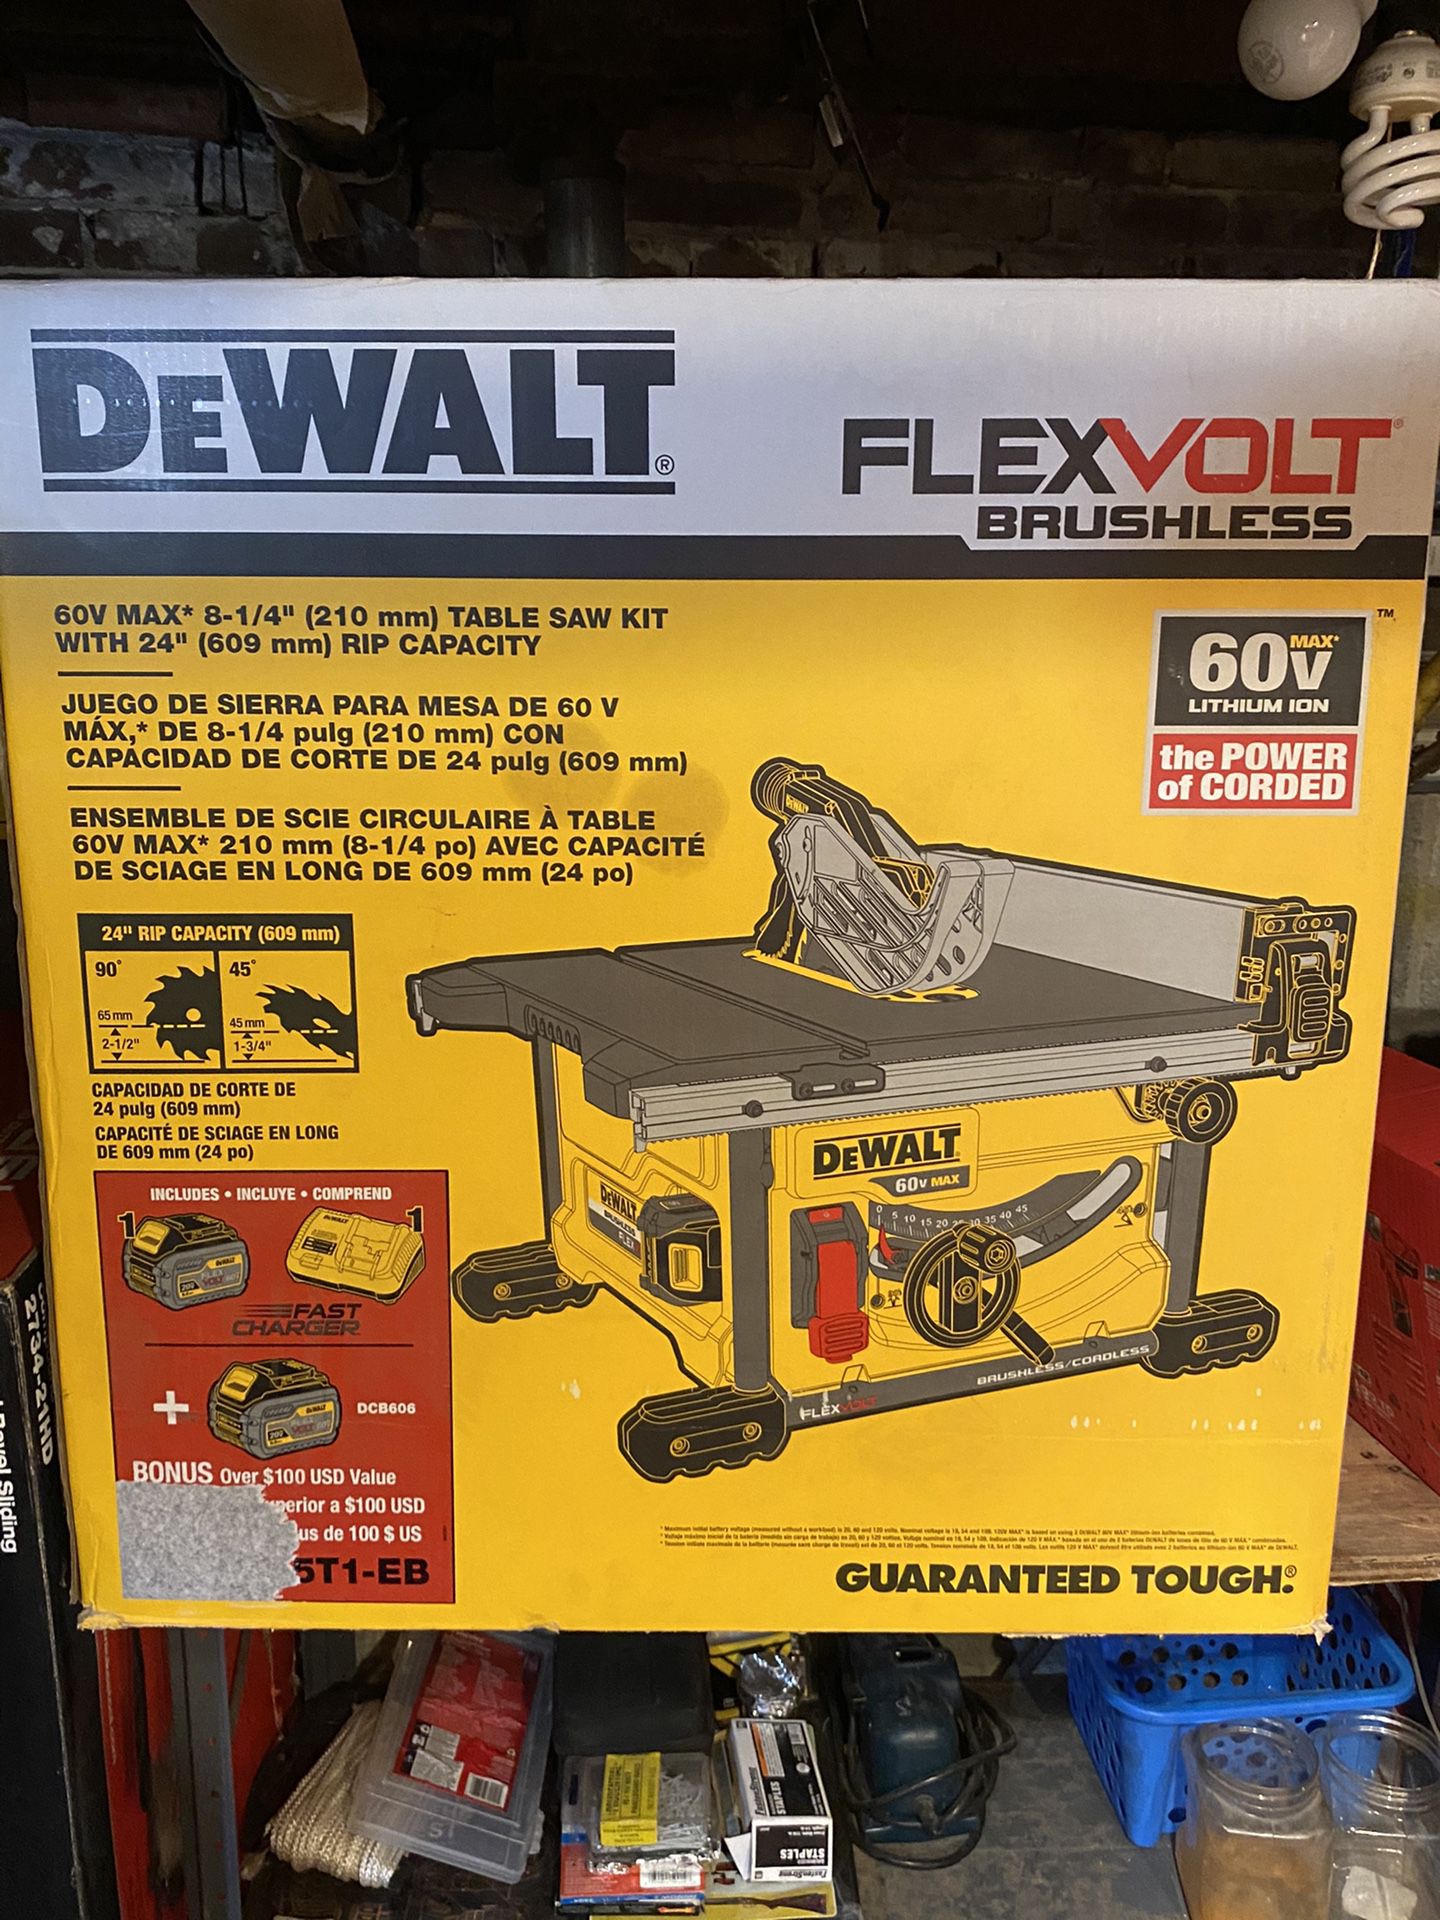 Dewalt 8-1/4” tables saw 60v battery powered